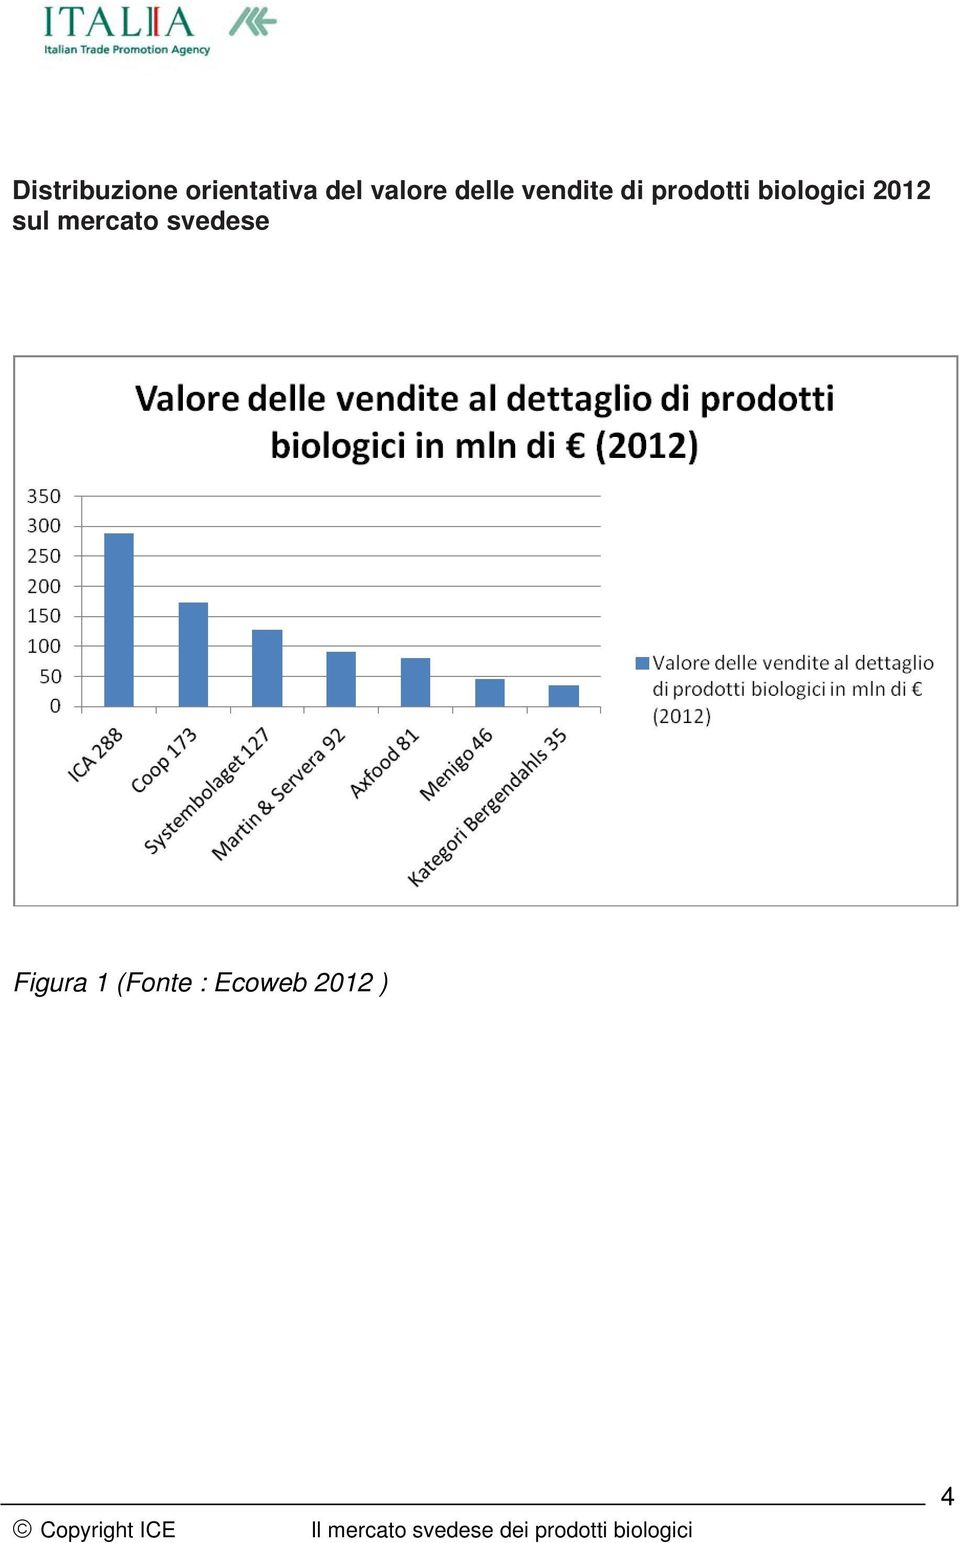 biologici 2012 sul mercato